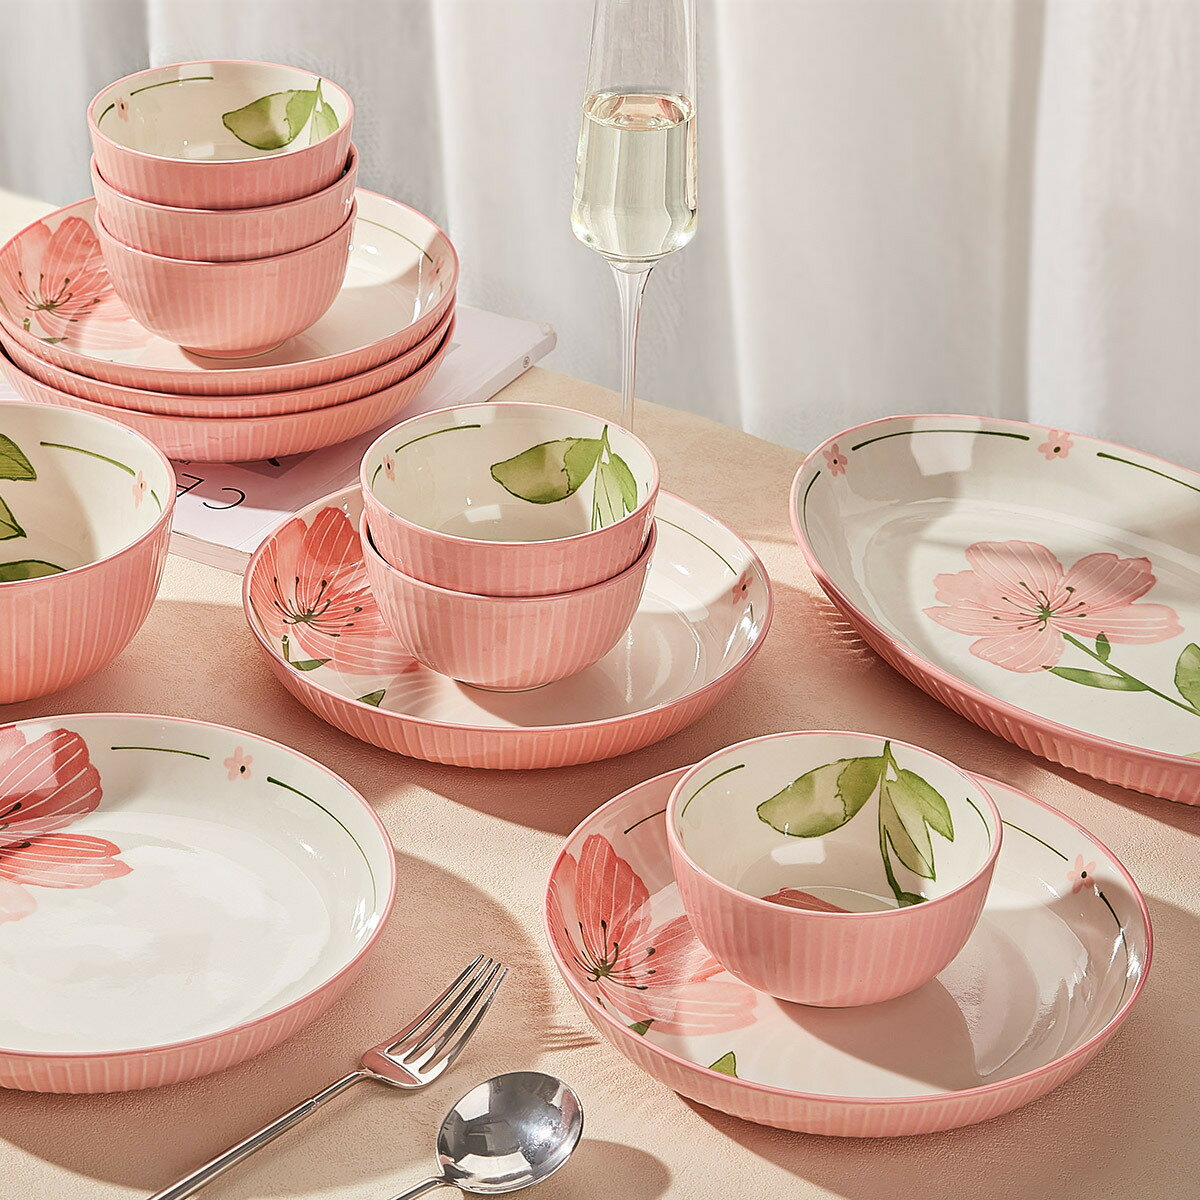 楓林宜居 清新碗碟套裝家用陶瓷碗盤碗筷組合喬遷盤子碗具結婚禮物餐具禮盒